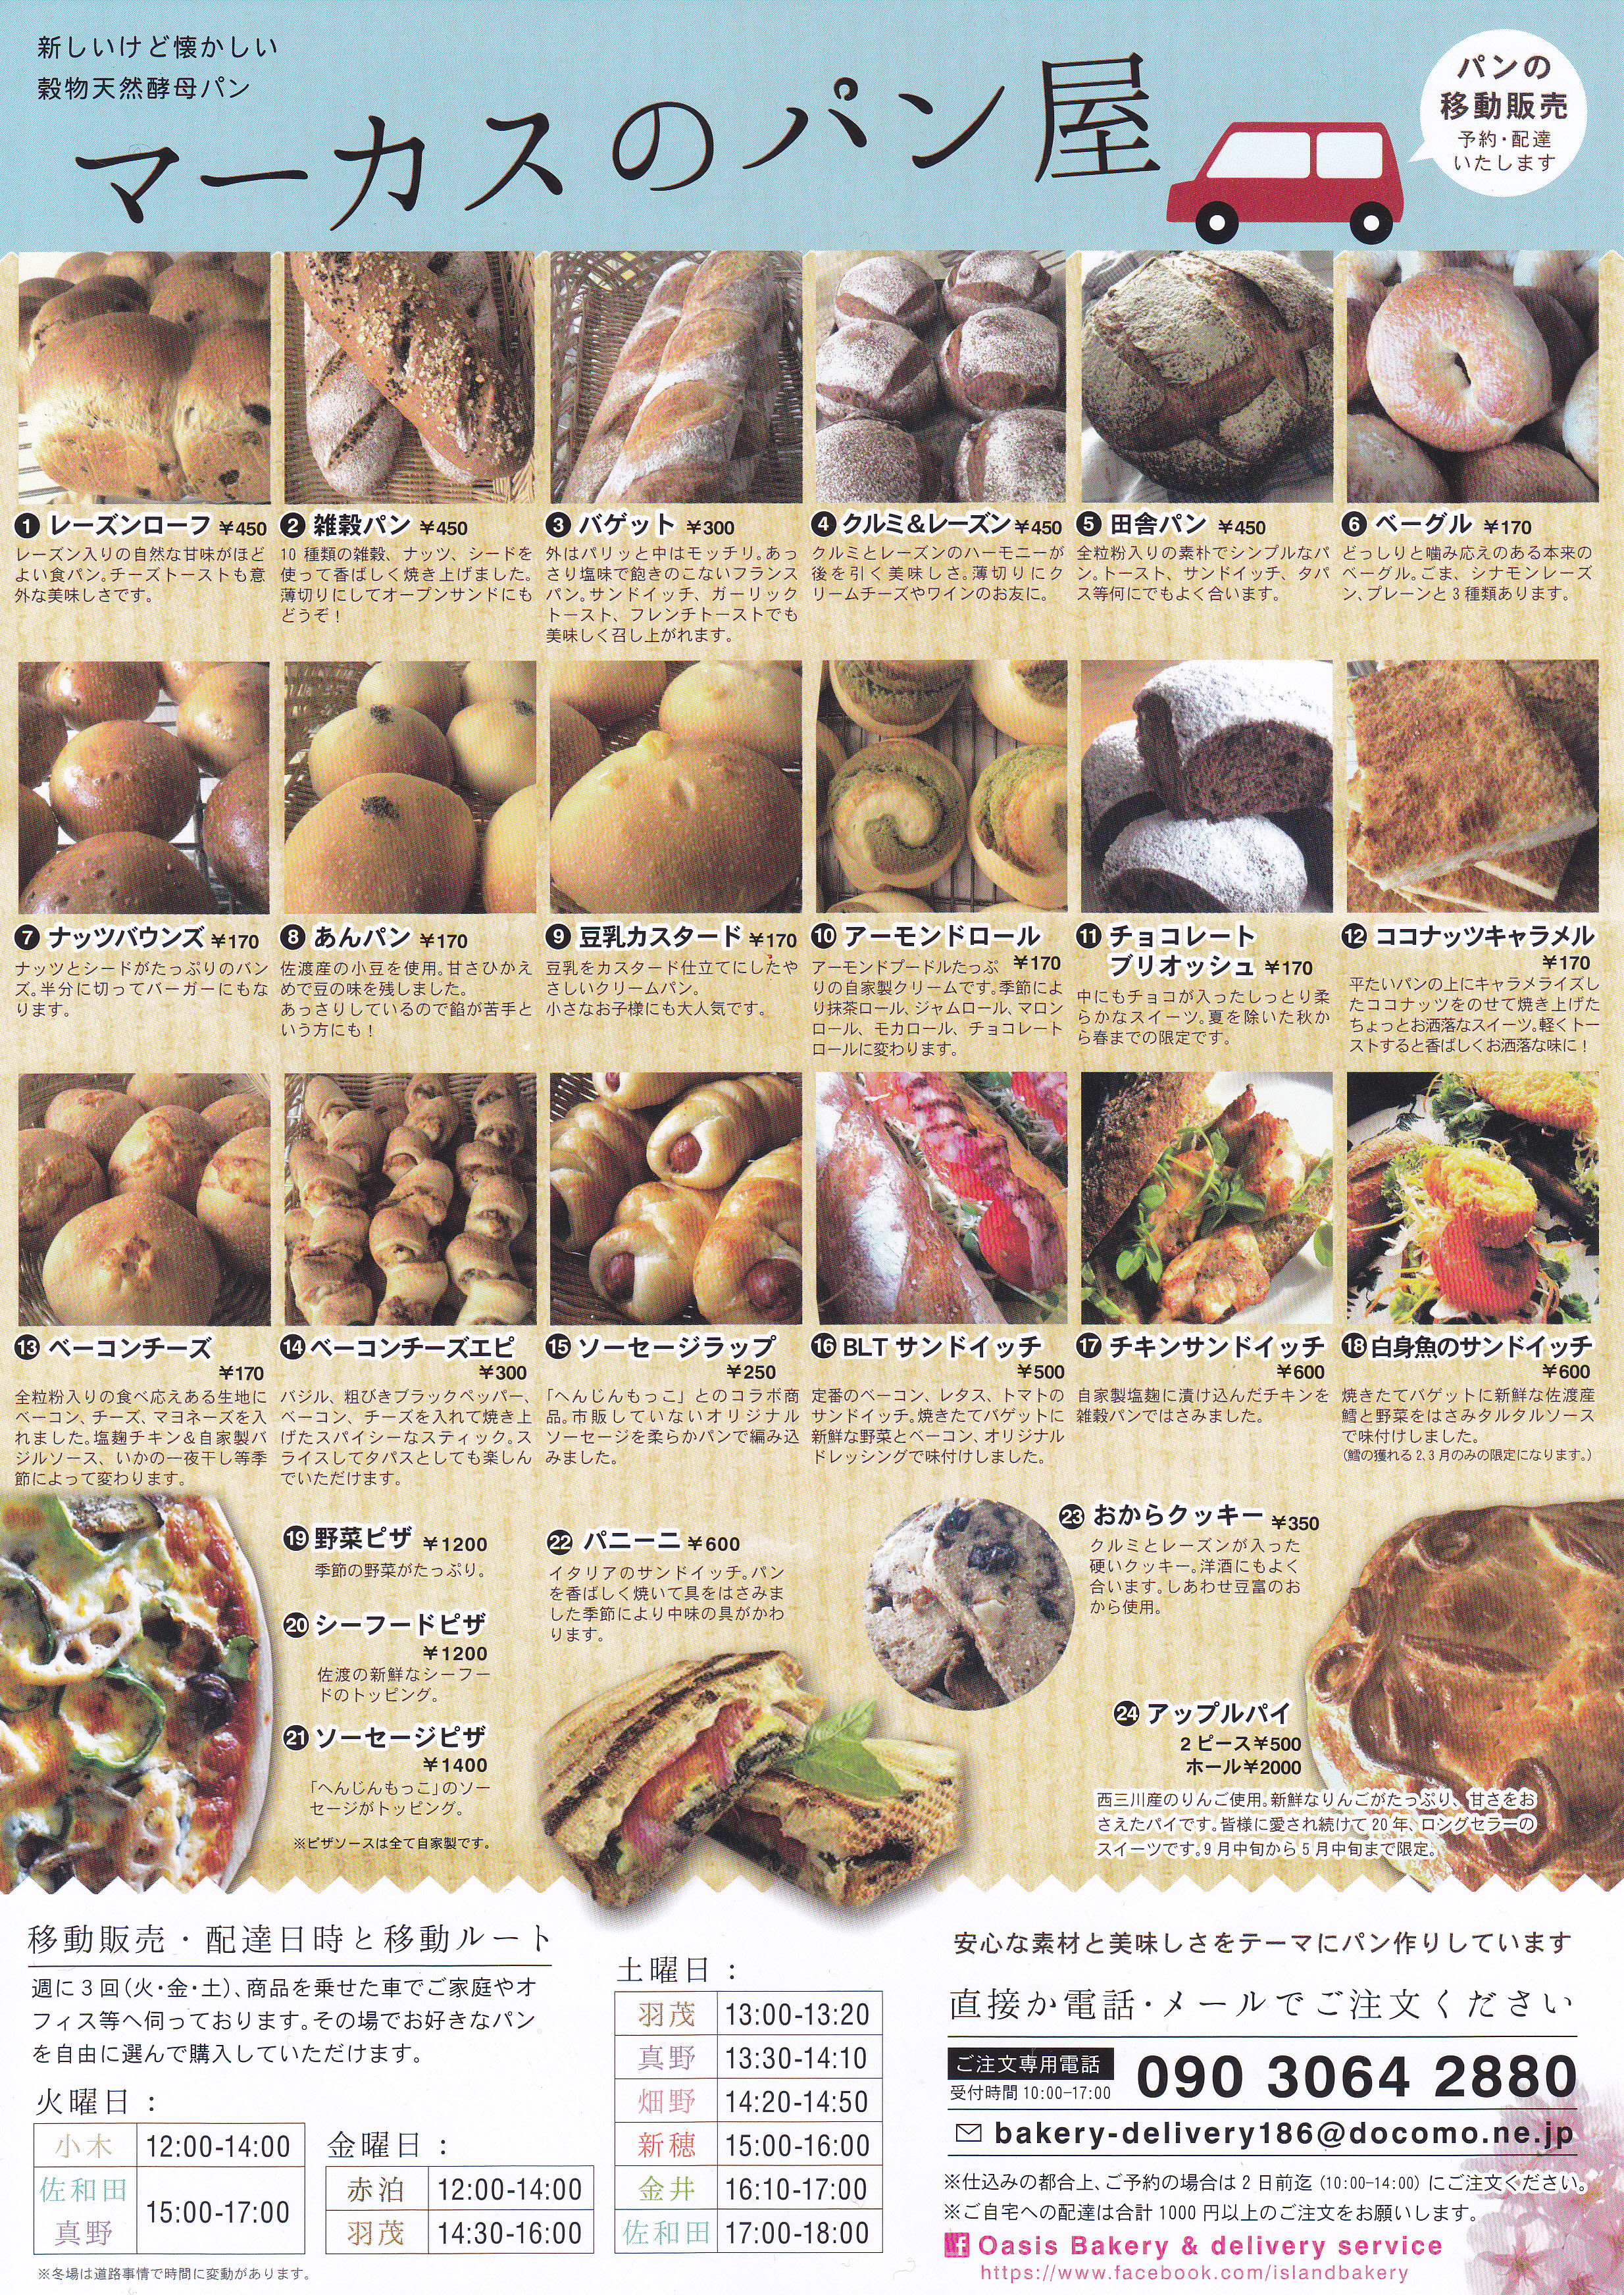 佐渡島のおすすめ人気パン屋さん三軒ピックアップ 旅館番頭の佐渡観光情報ブログ